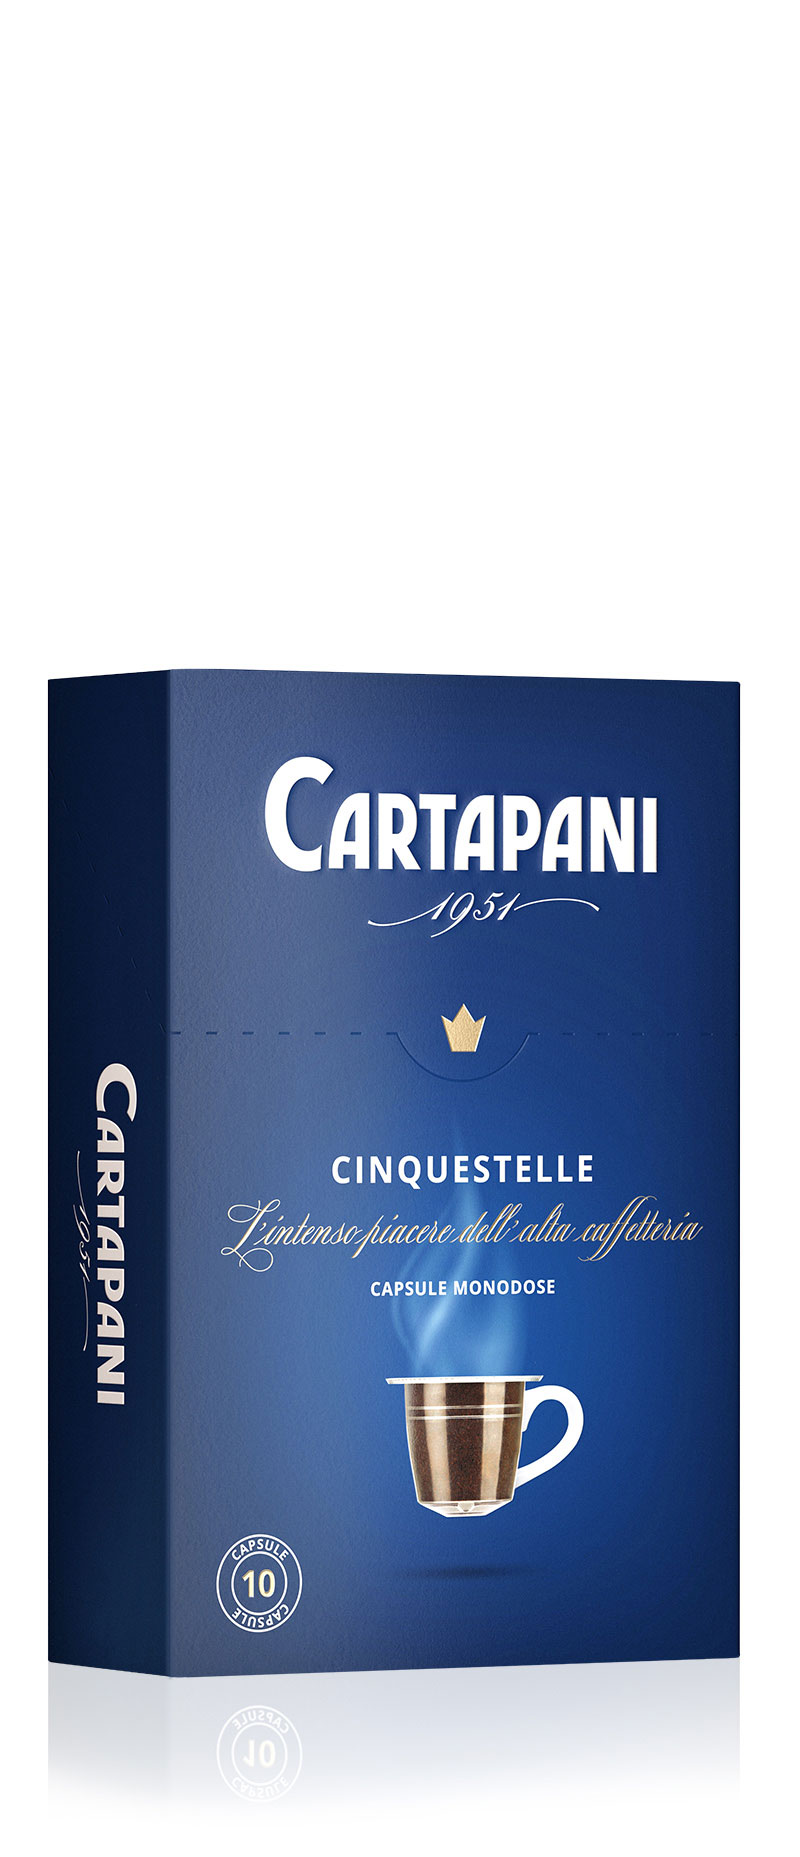 CINQUESTELLE capsule - Cartapani